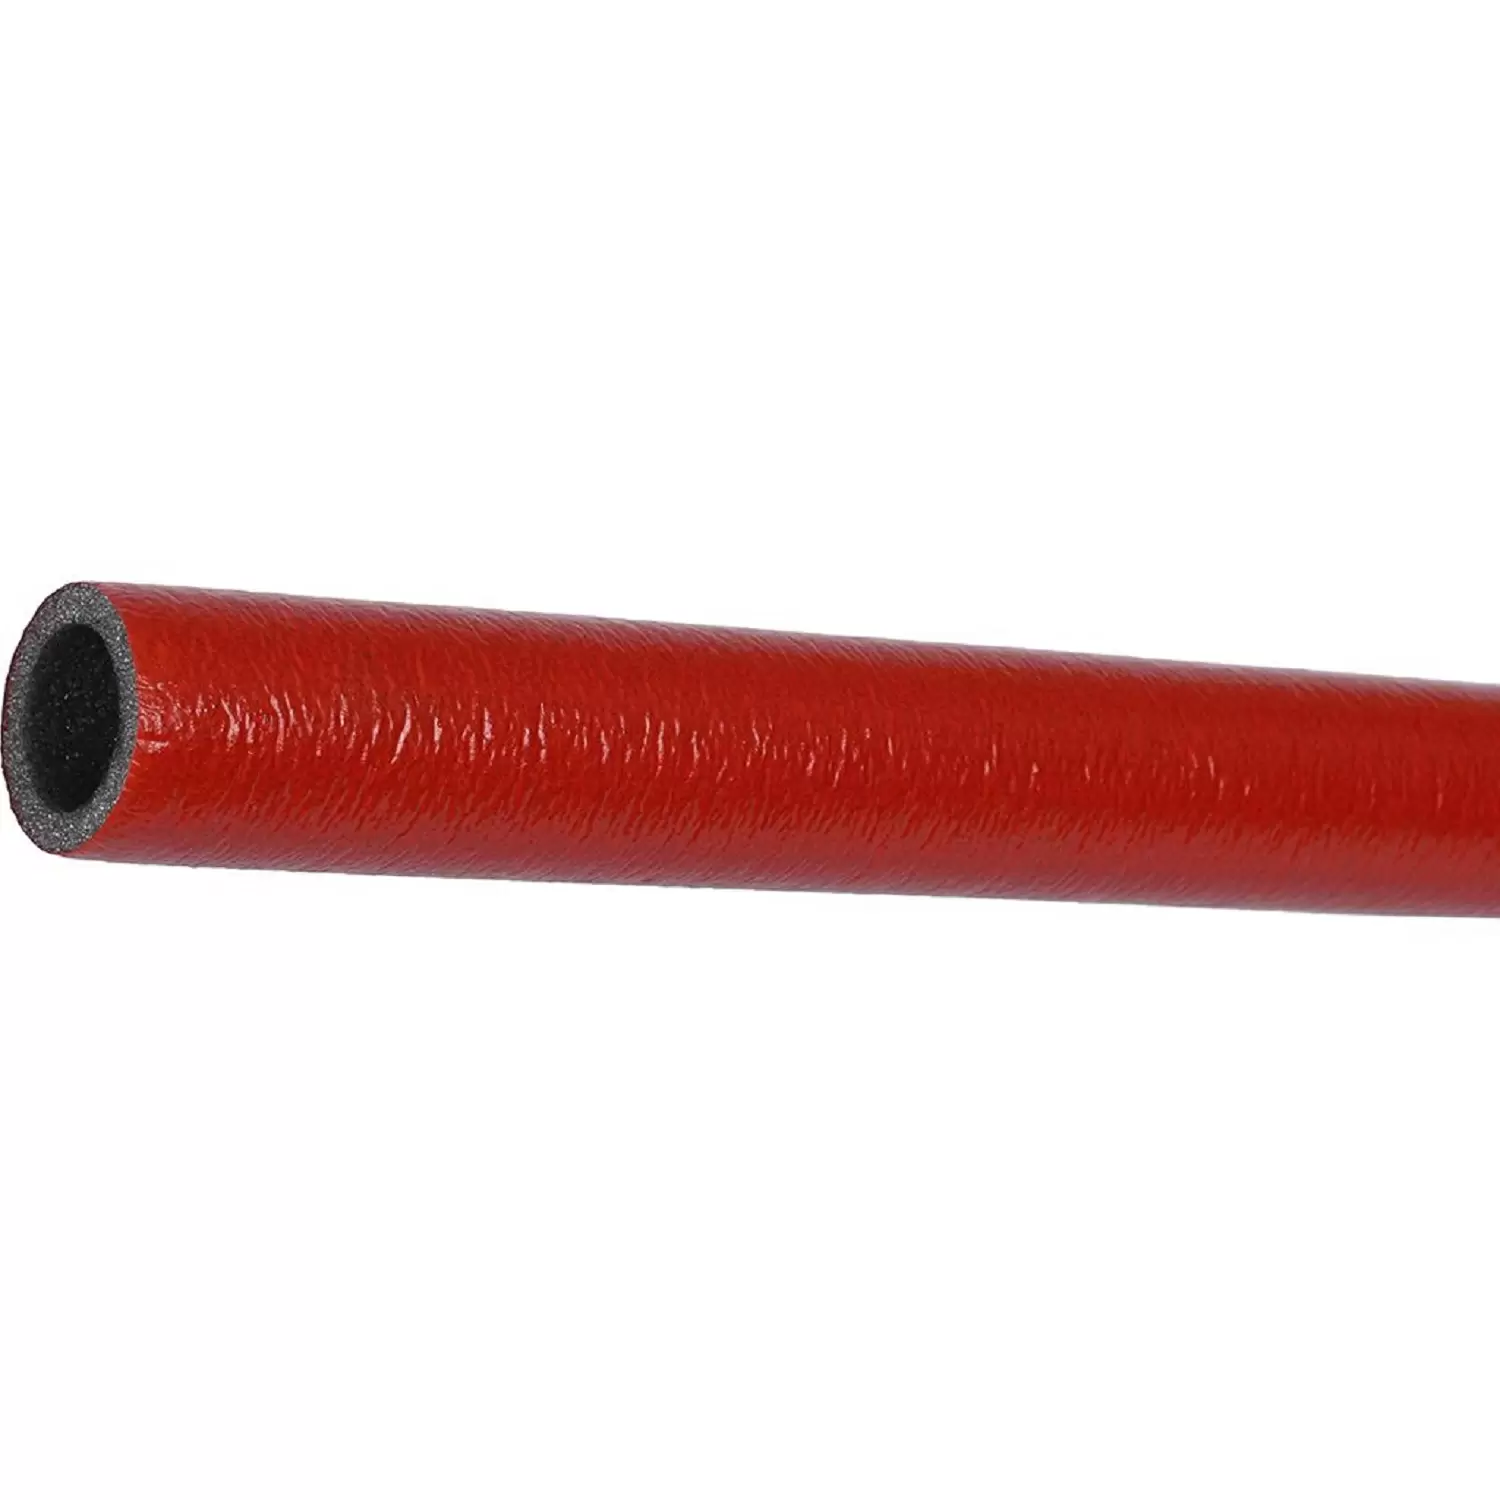 Теплоизоляция Энергофлекс супер протект 35/6 для труб диаметром 32 мм красная, трубка 2 м